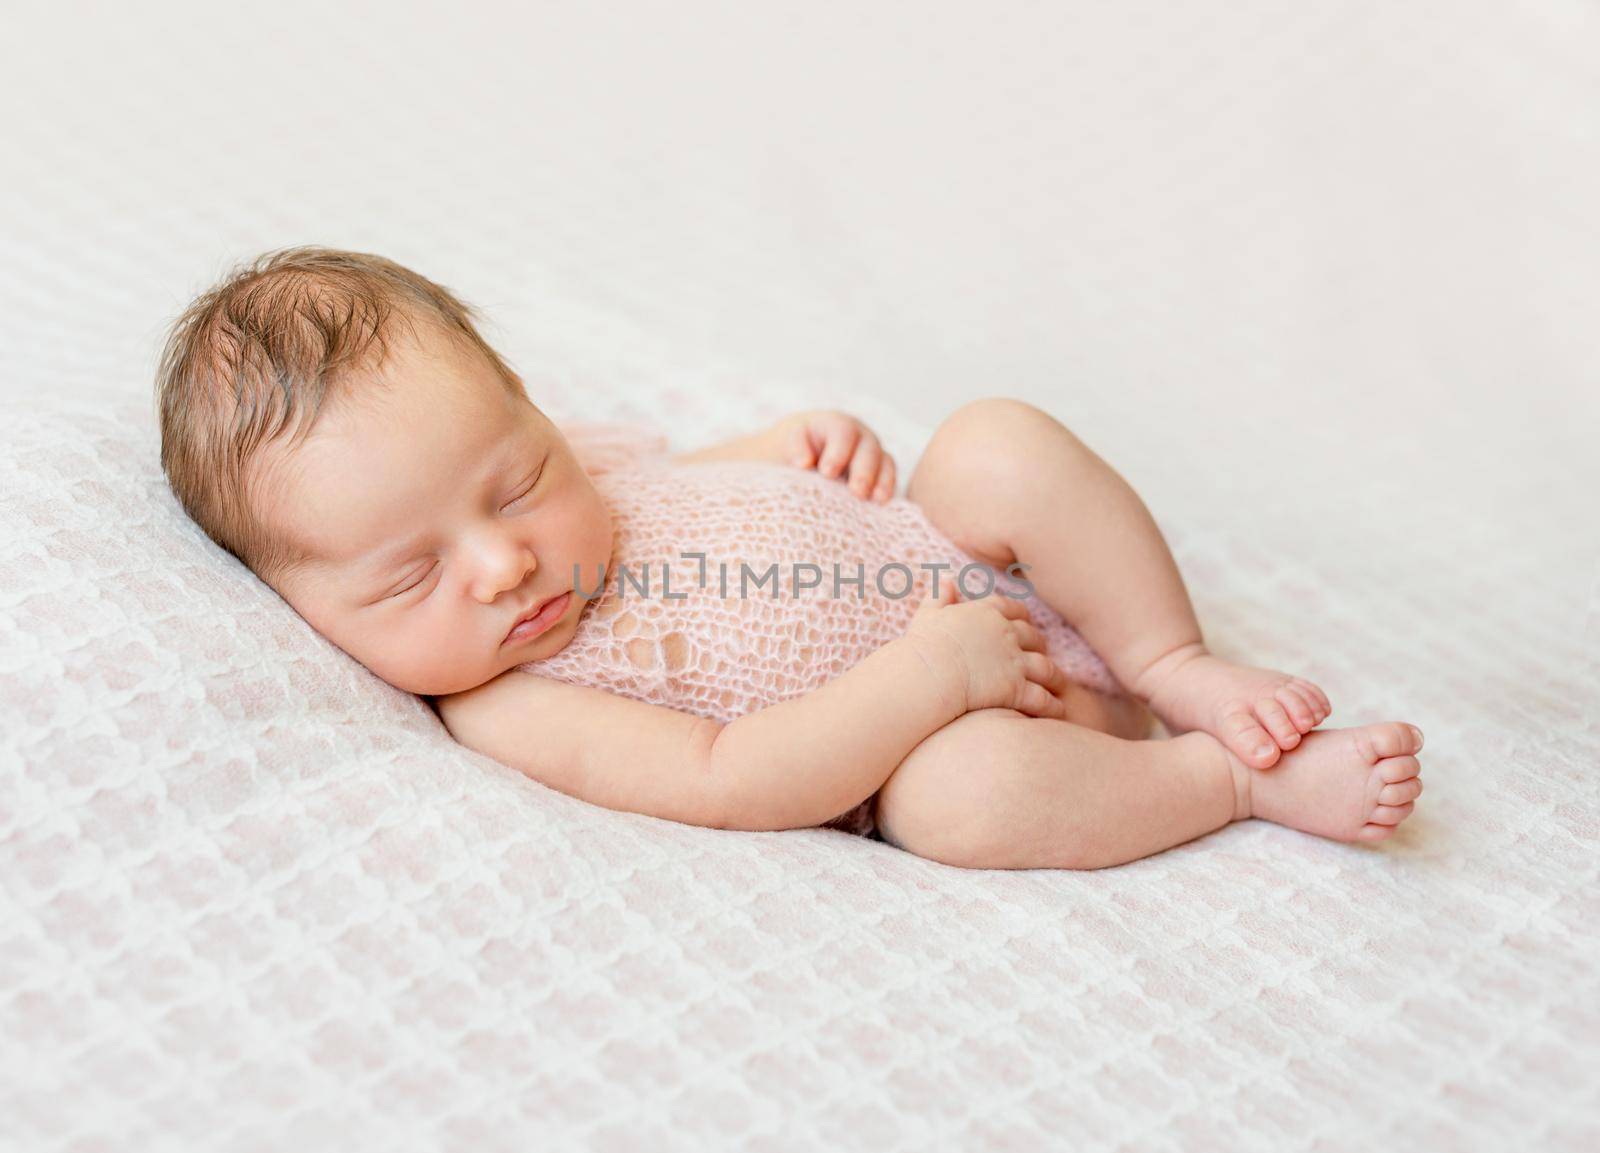 lovely newborn girl sleeping on pink blanket by tan4ikk1